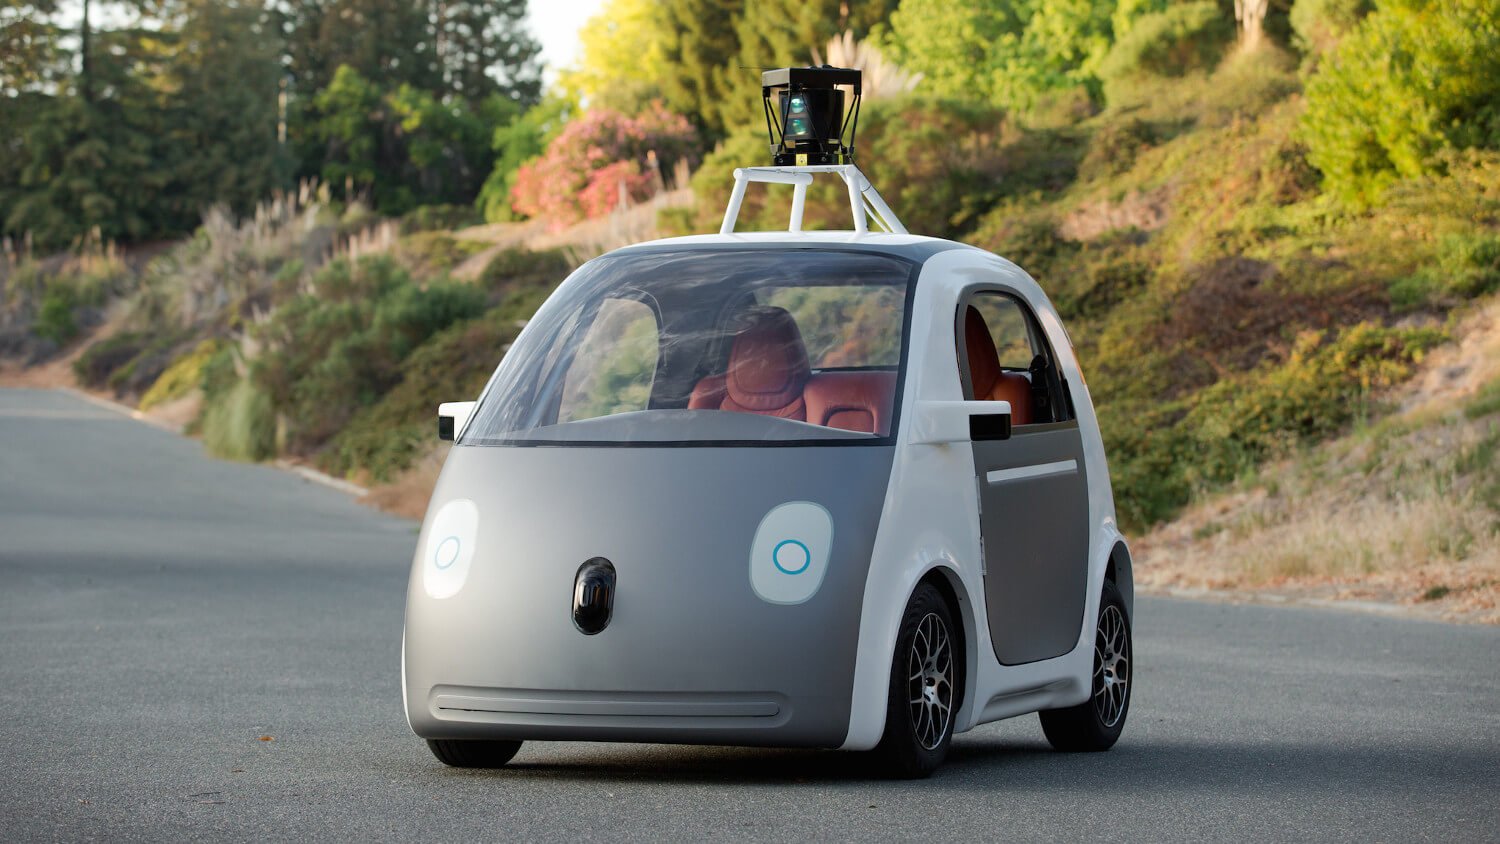 Прототип беспилотного автомобиля Google